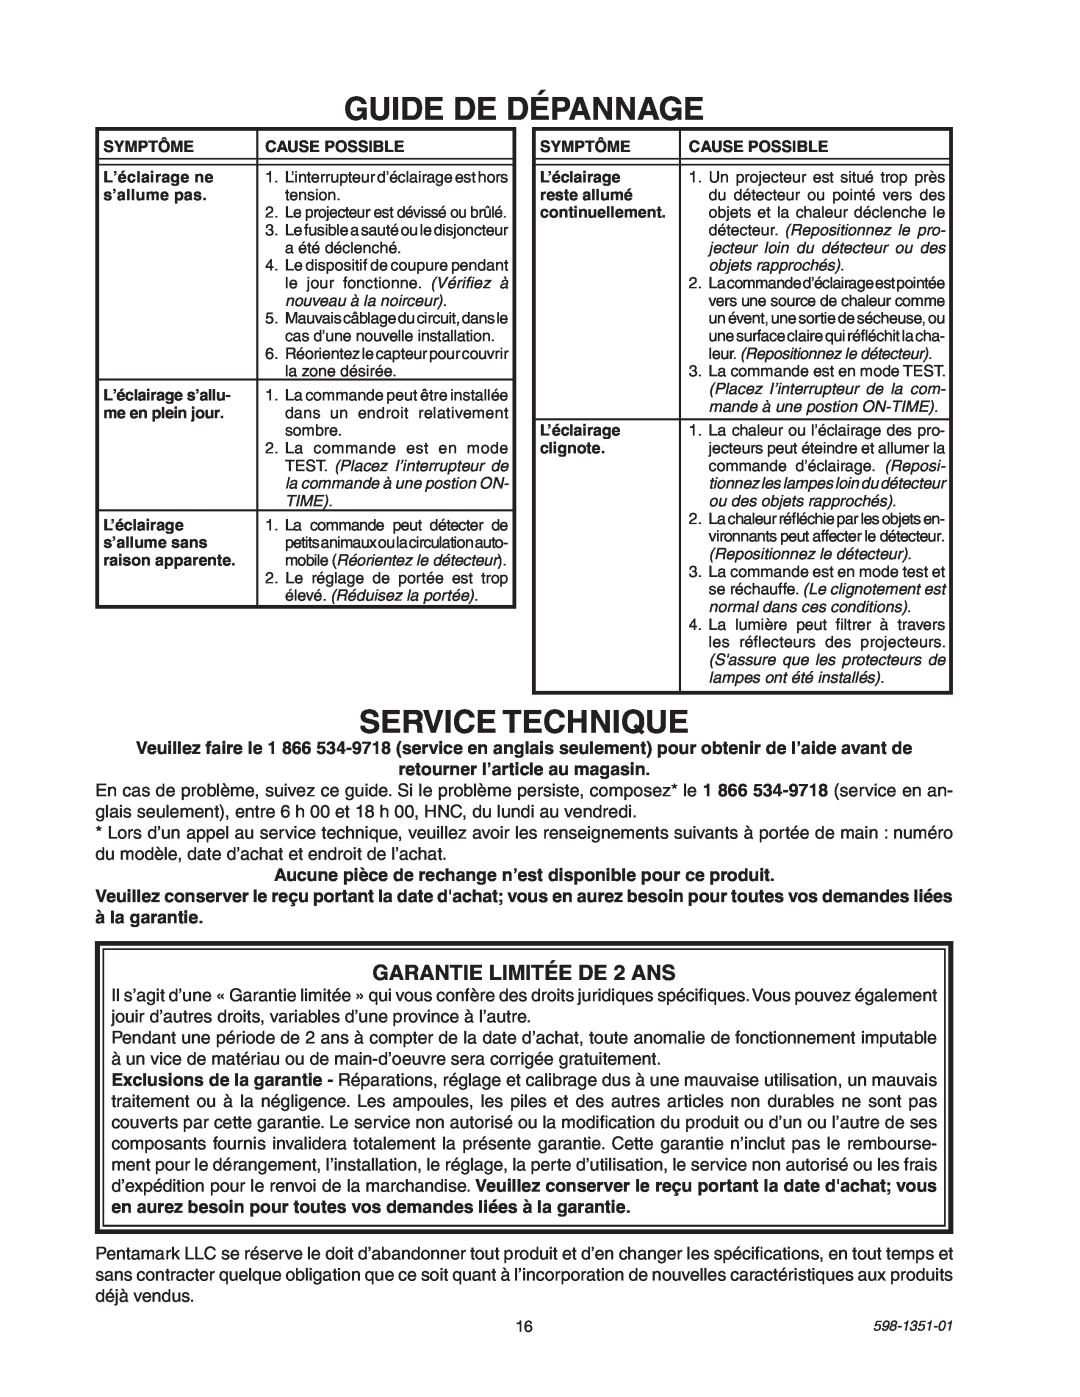 Heath Zenith MSL360FWPB manual Guide De Dépannage, Service Technique, GARANTIE LIMITÉE DE 2 ANS 